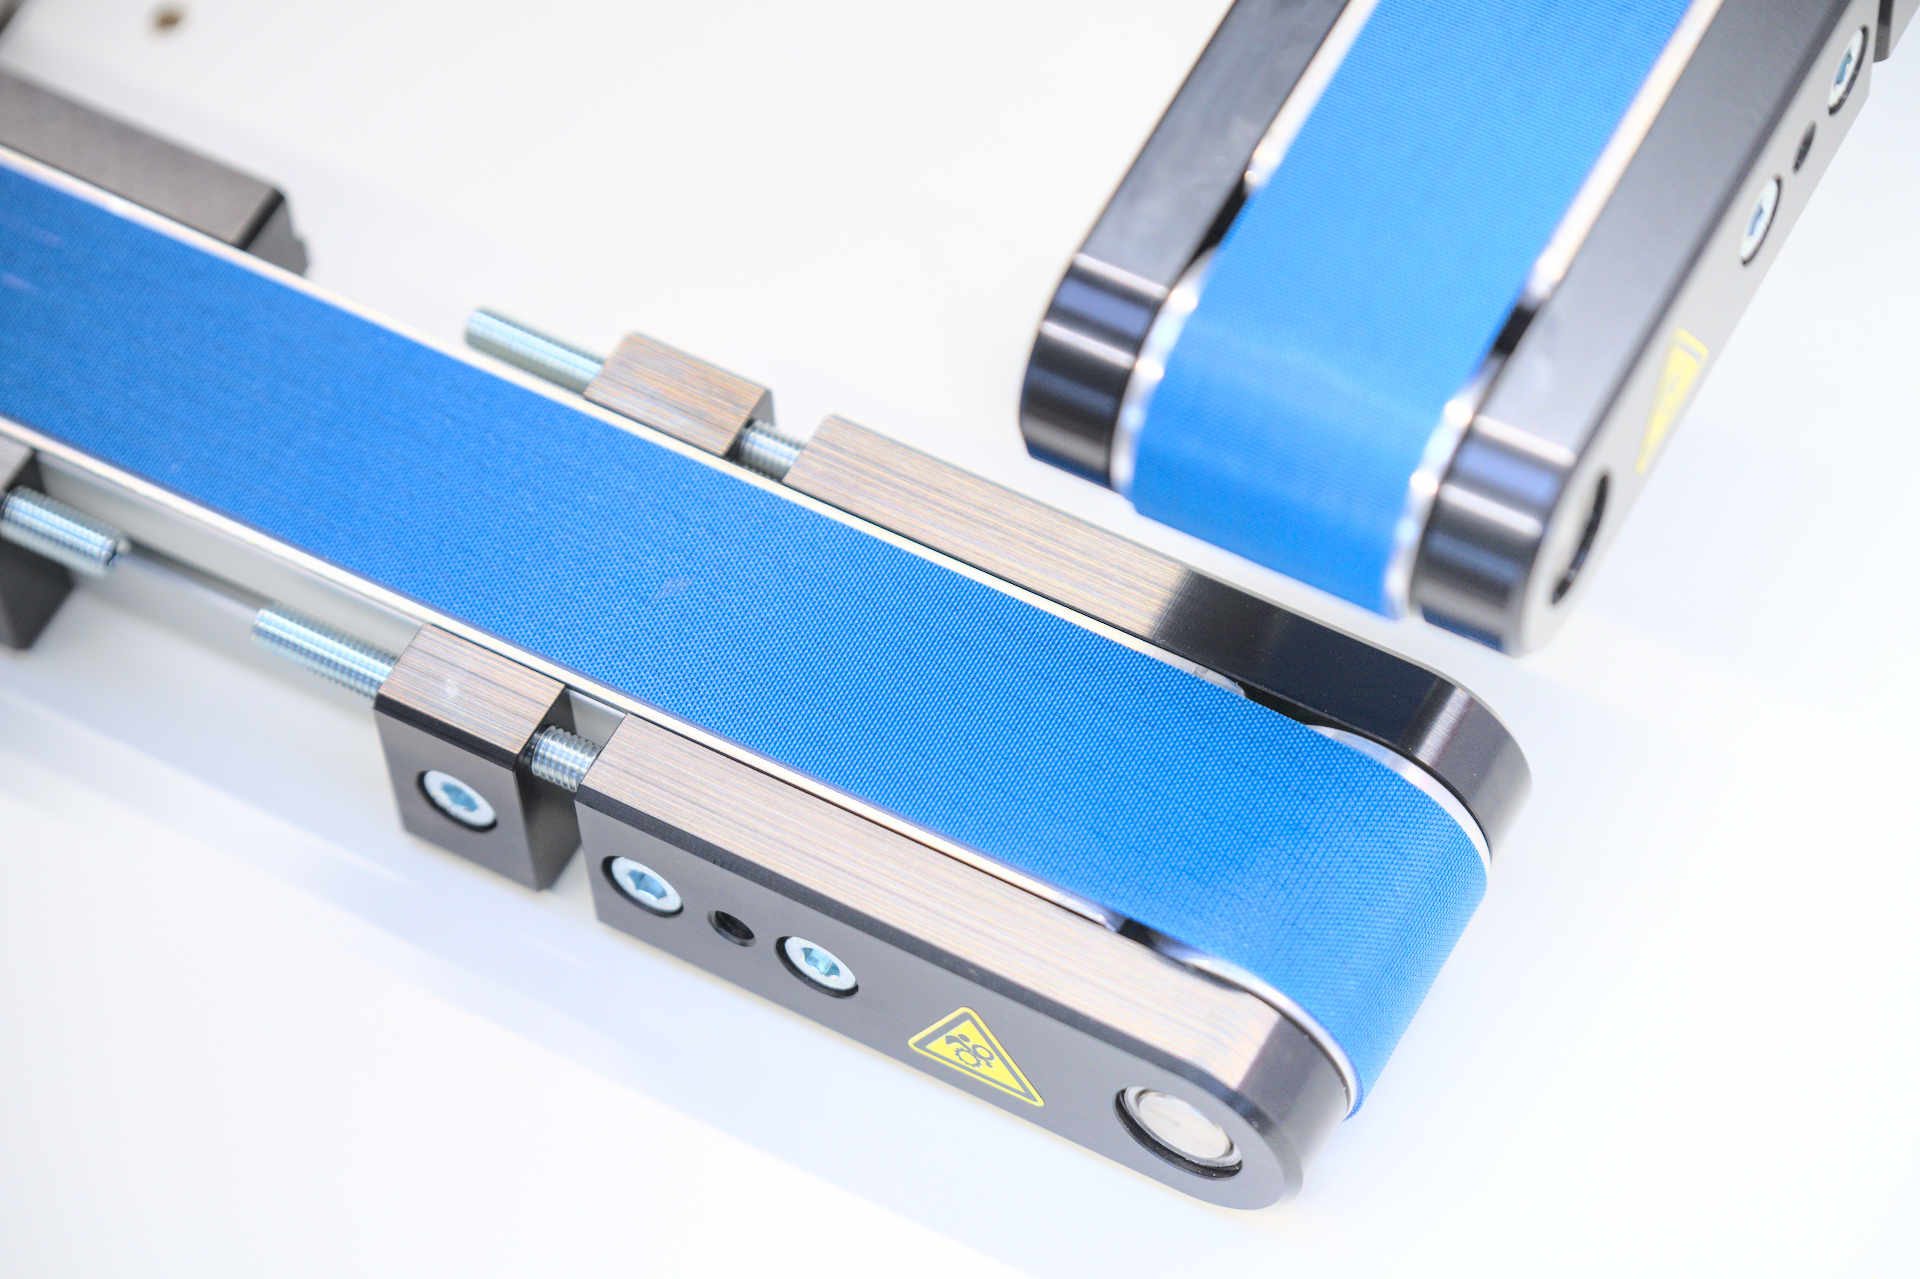 Zwei kleinere Minitrans H40 Förderbänder auf einer weißen Oberfläche mit blauem Fördergurt